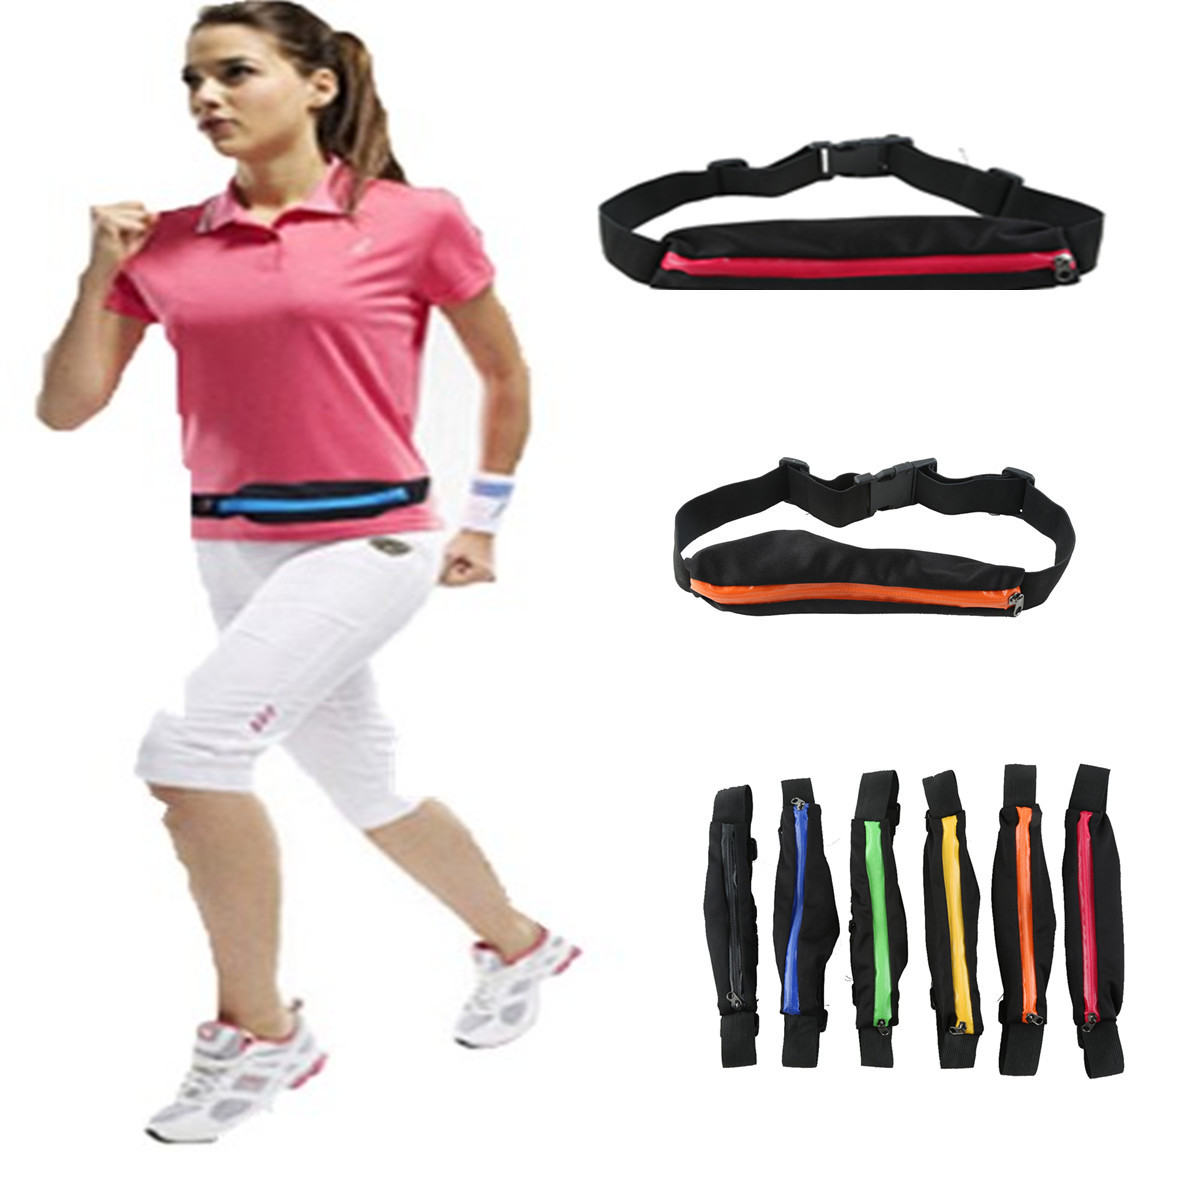 Buy cheap Sports Waist (Belt) Bag OT-001, Running Waist Bag from wholesalers